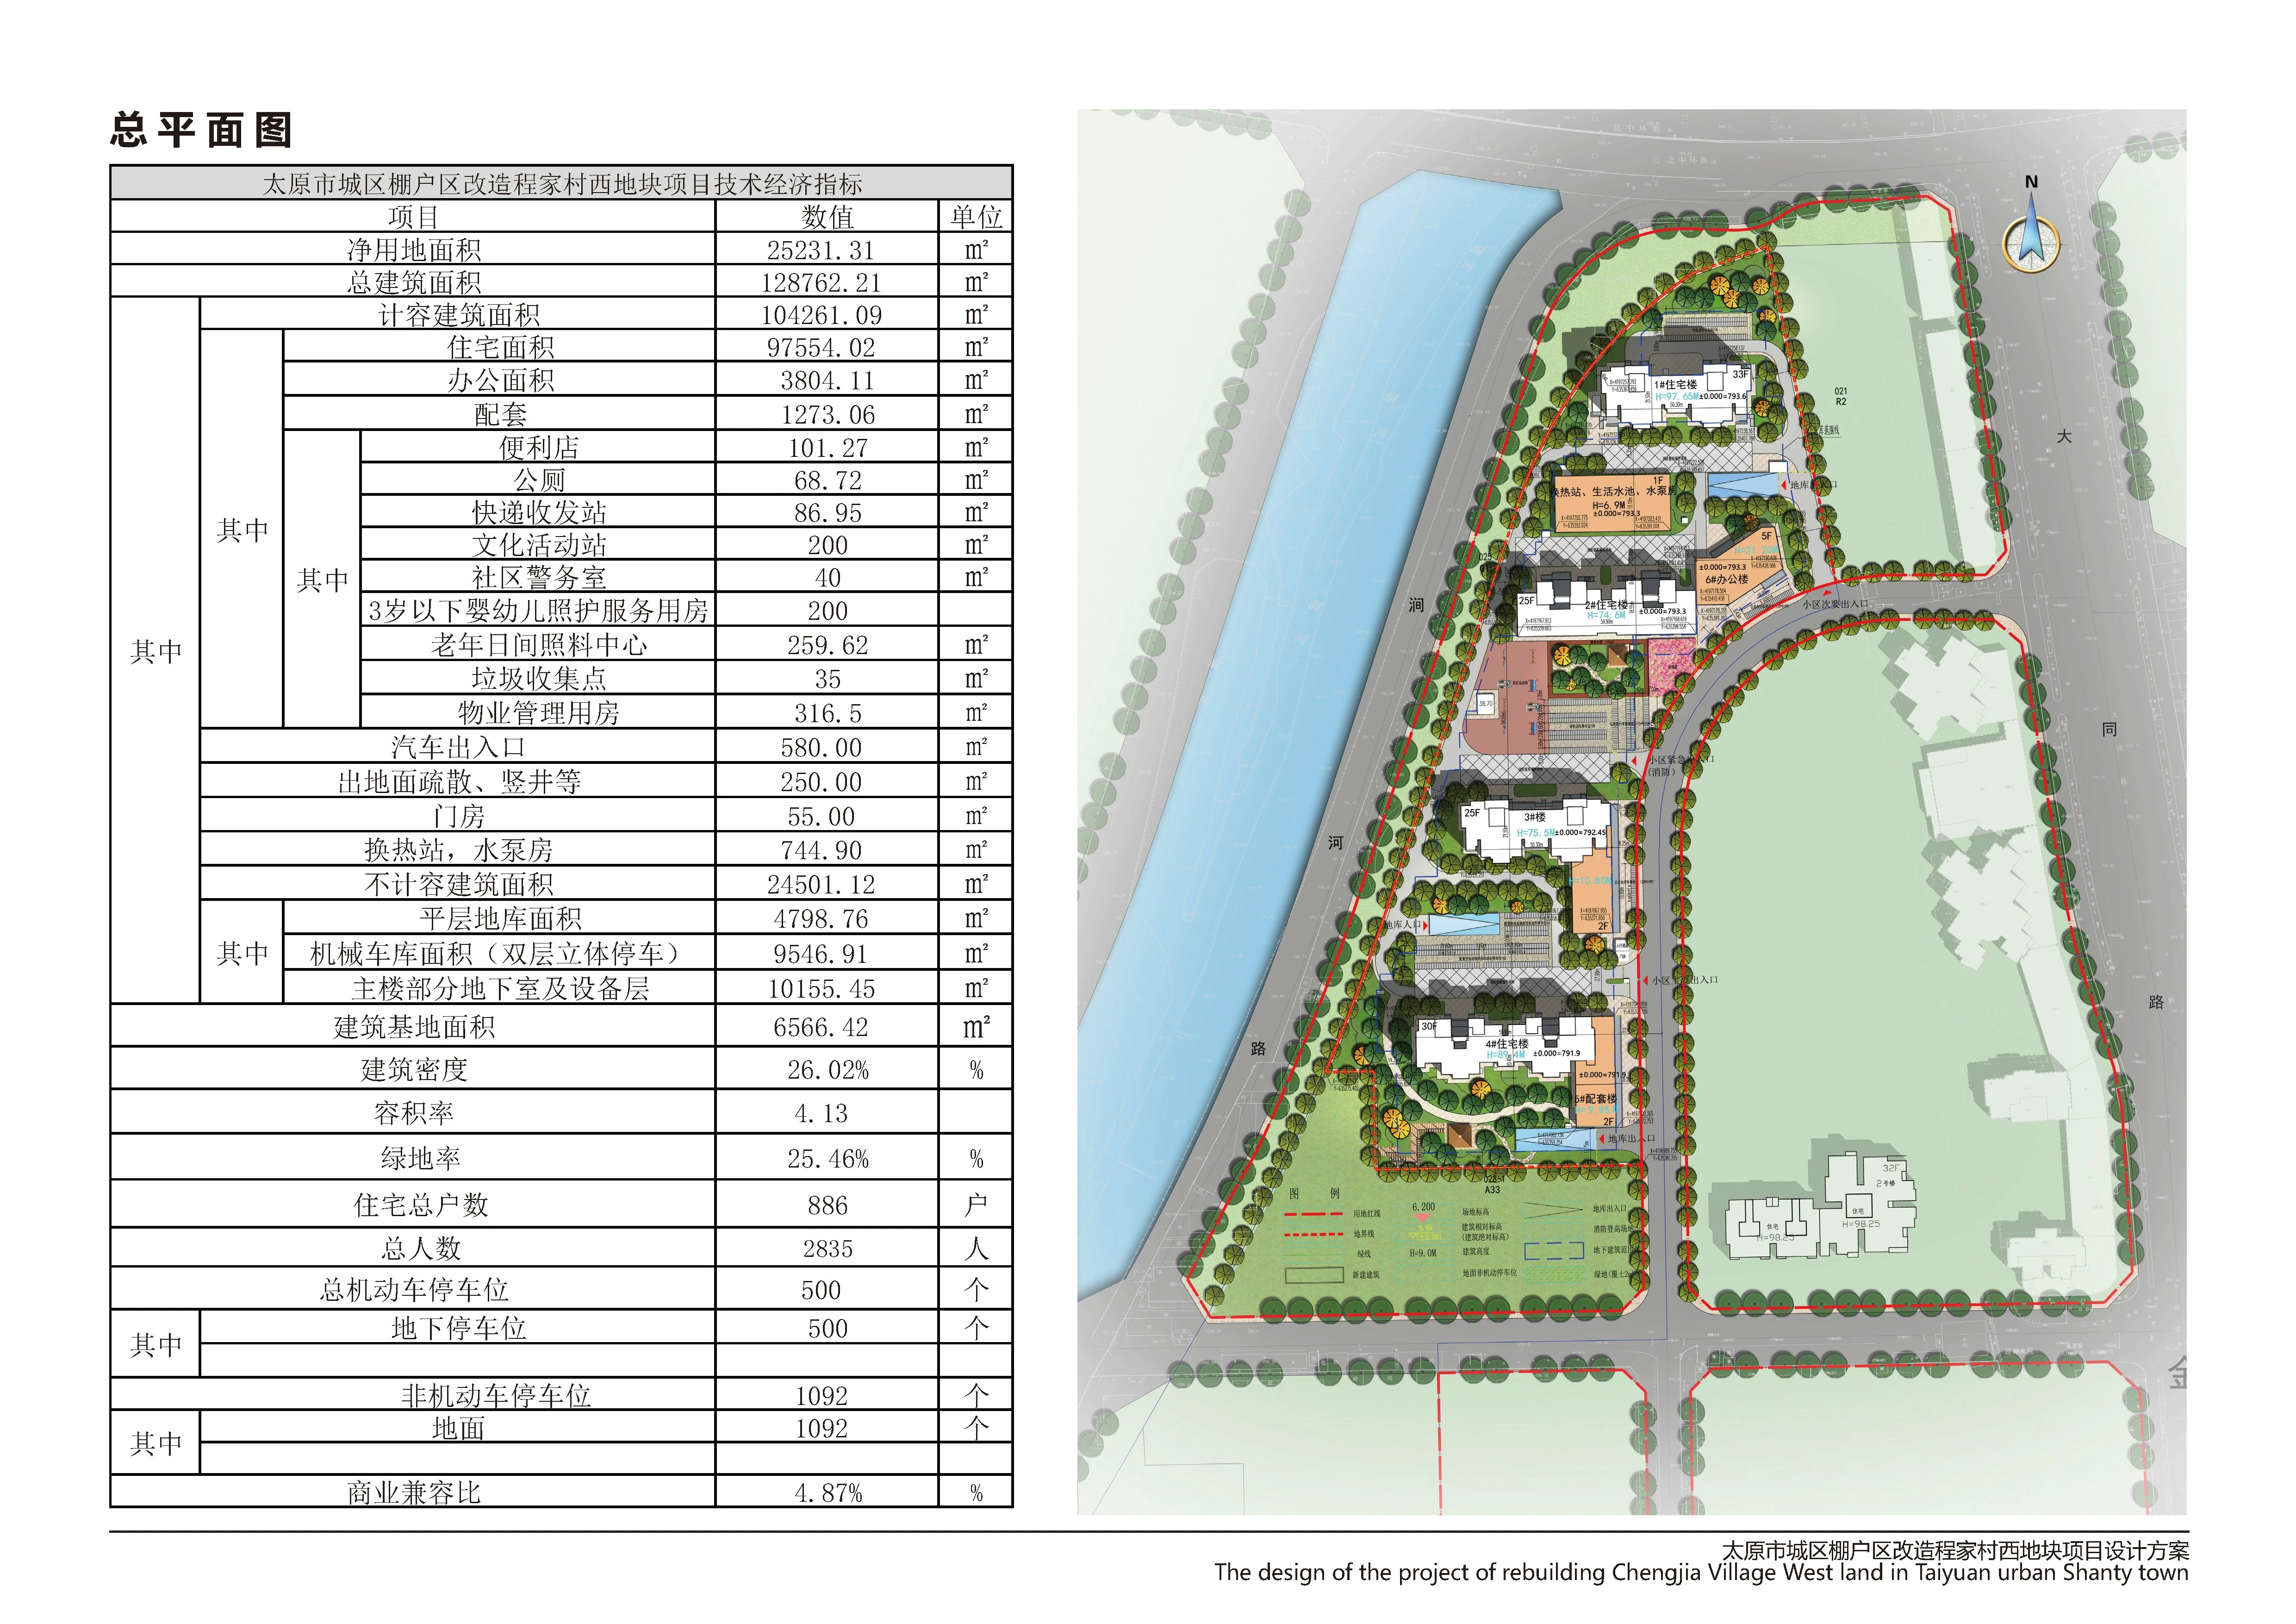 太原城区棚户区改造程家村西地块项目建筑工程规划设计方案公示